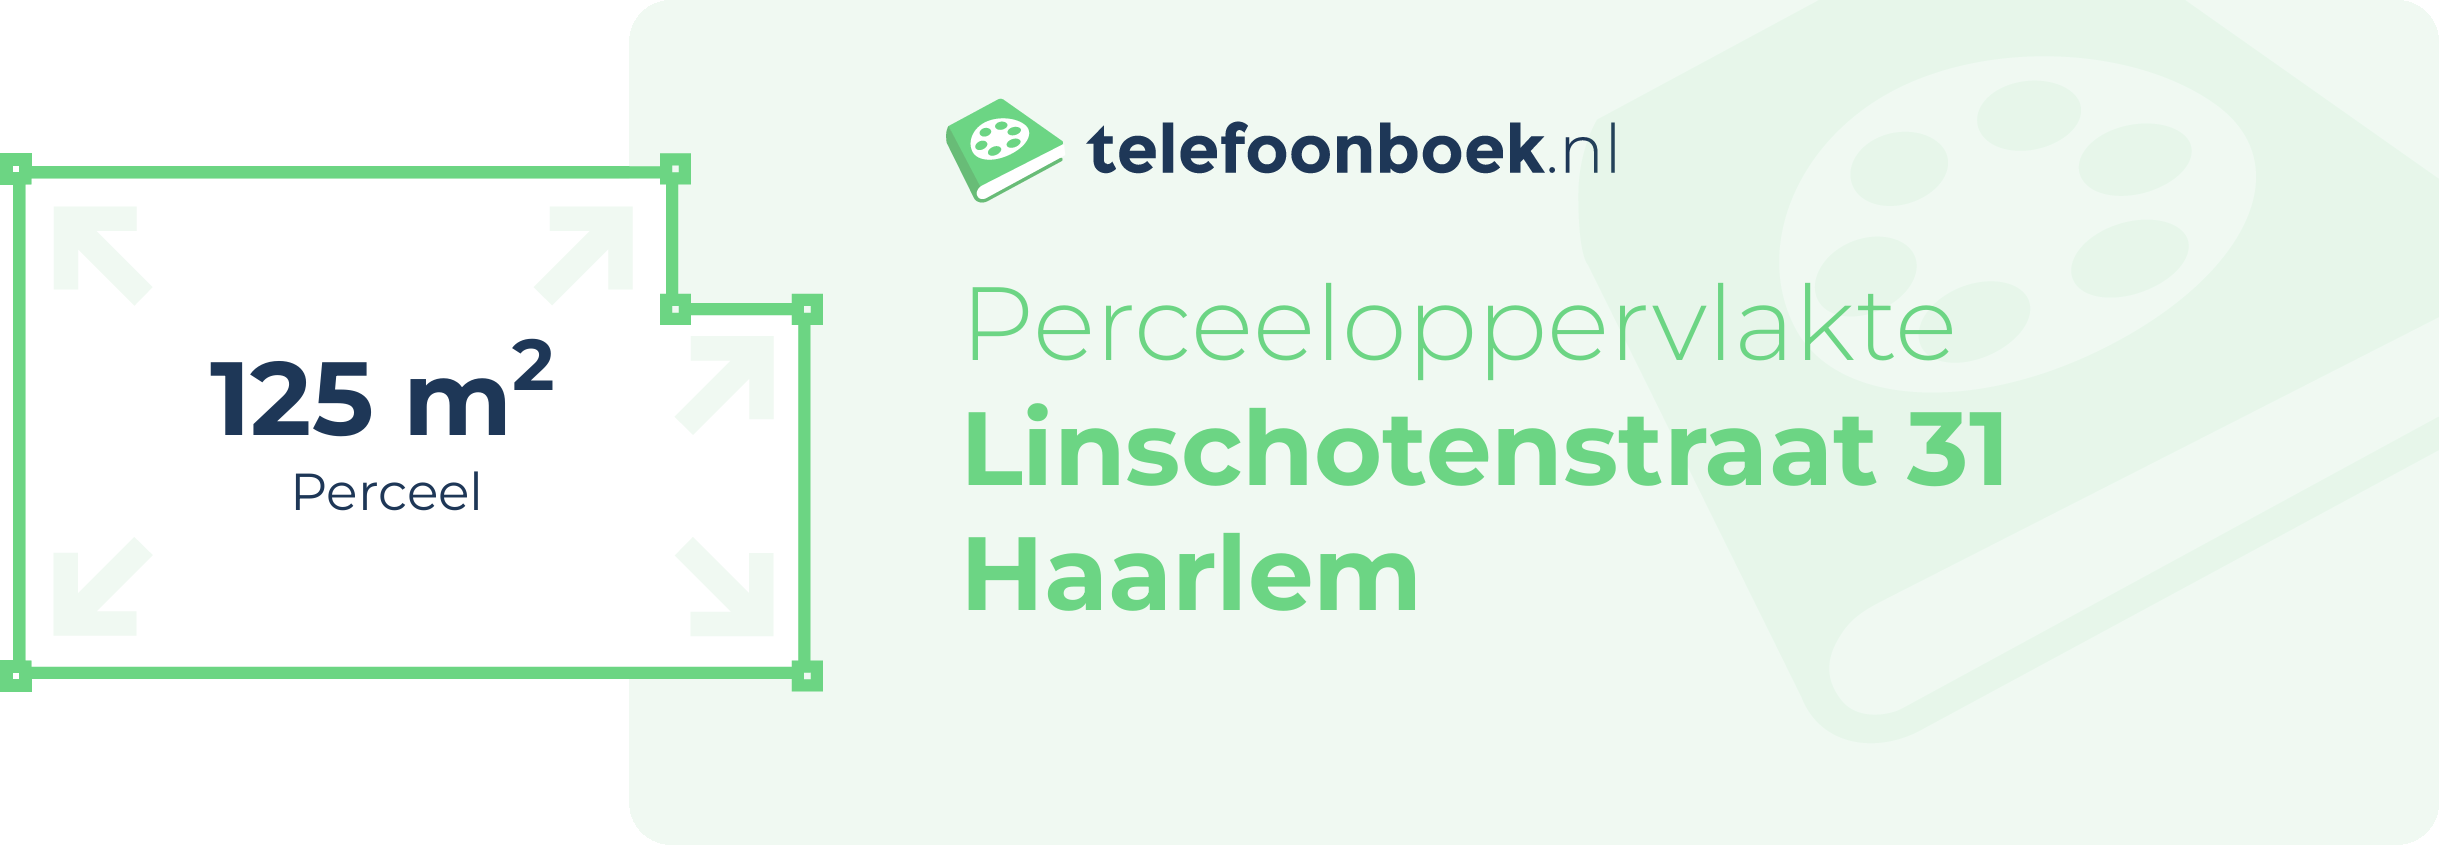 Perceeloppervlakte Linschotenstraat 31 Haarlem